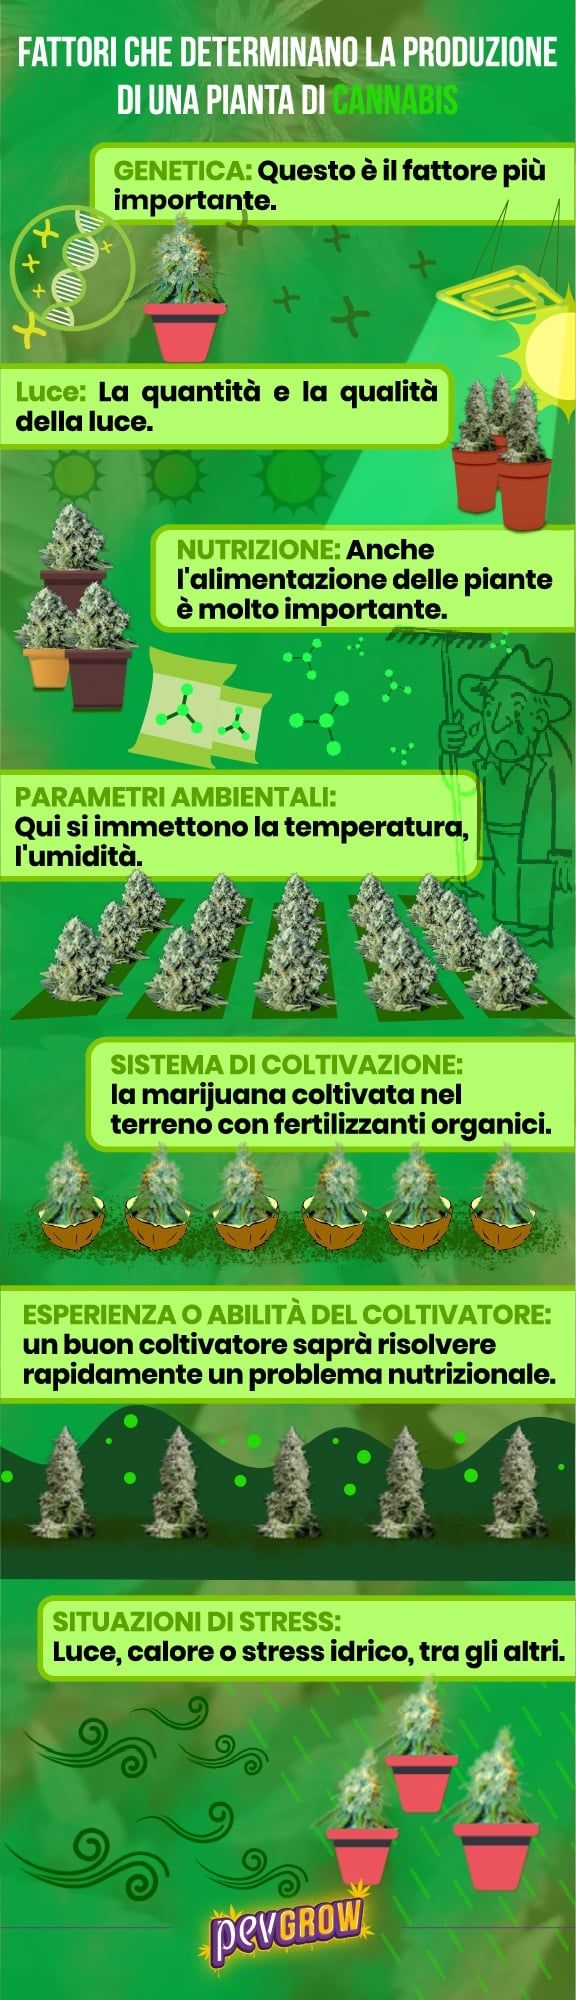 I fattori che determinano la produzione di una pianta di cannabis in immagini